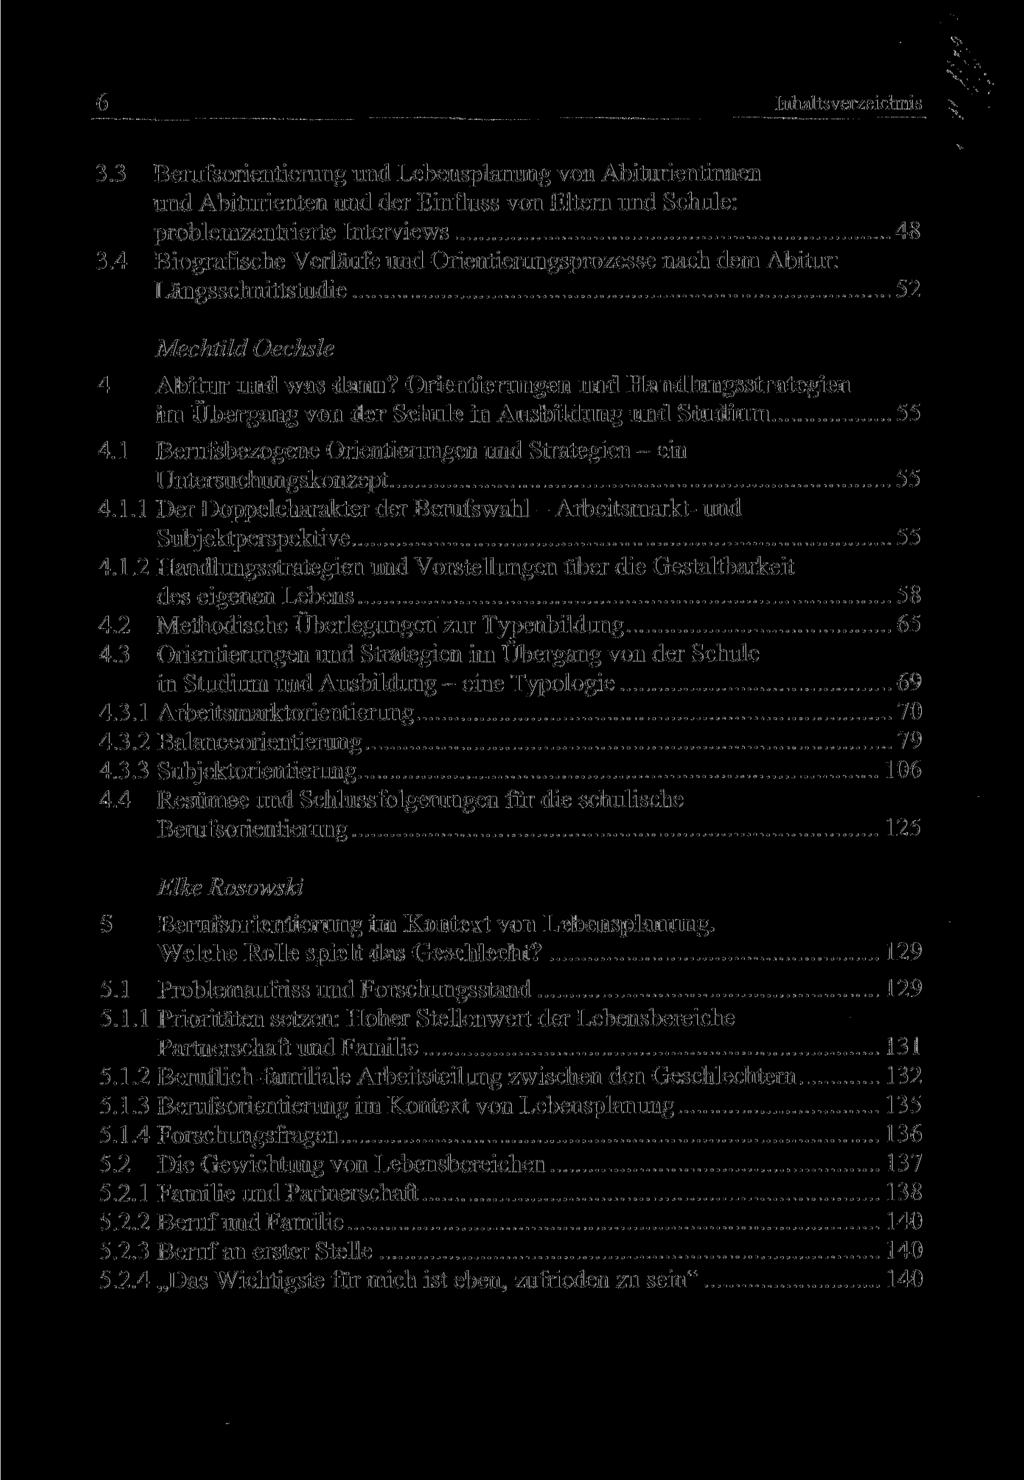 6 Inhaltsverzeichnis 3.3 Berufsorientierang und Lebensplanung von Abiturientinnen und Abiturienten und der Einfluss von Eltern und Schule: problemzentrierte Interviews 48 3.